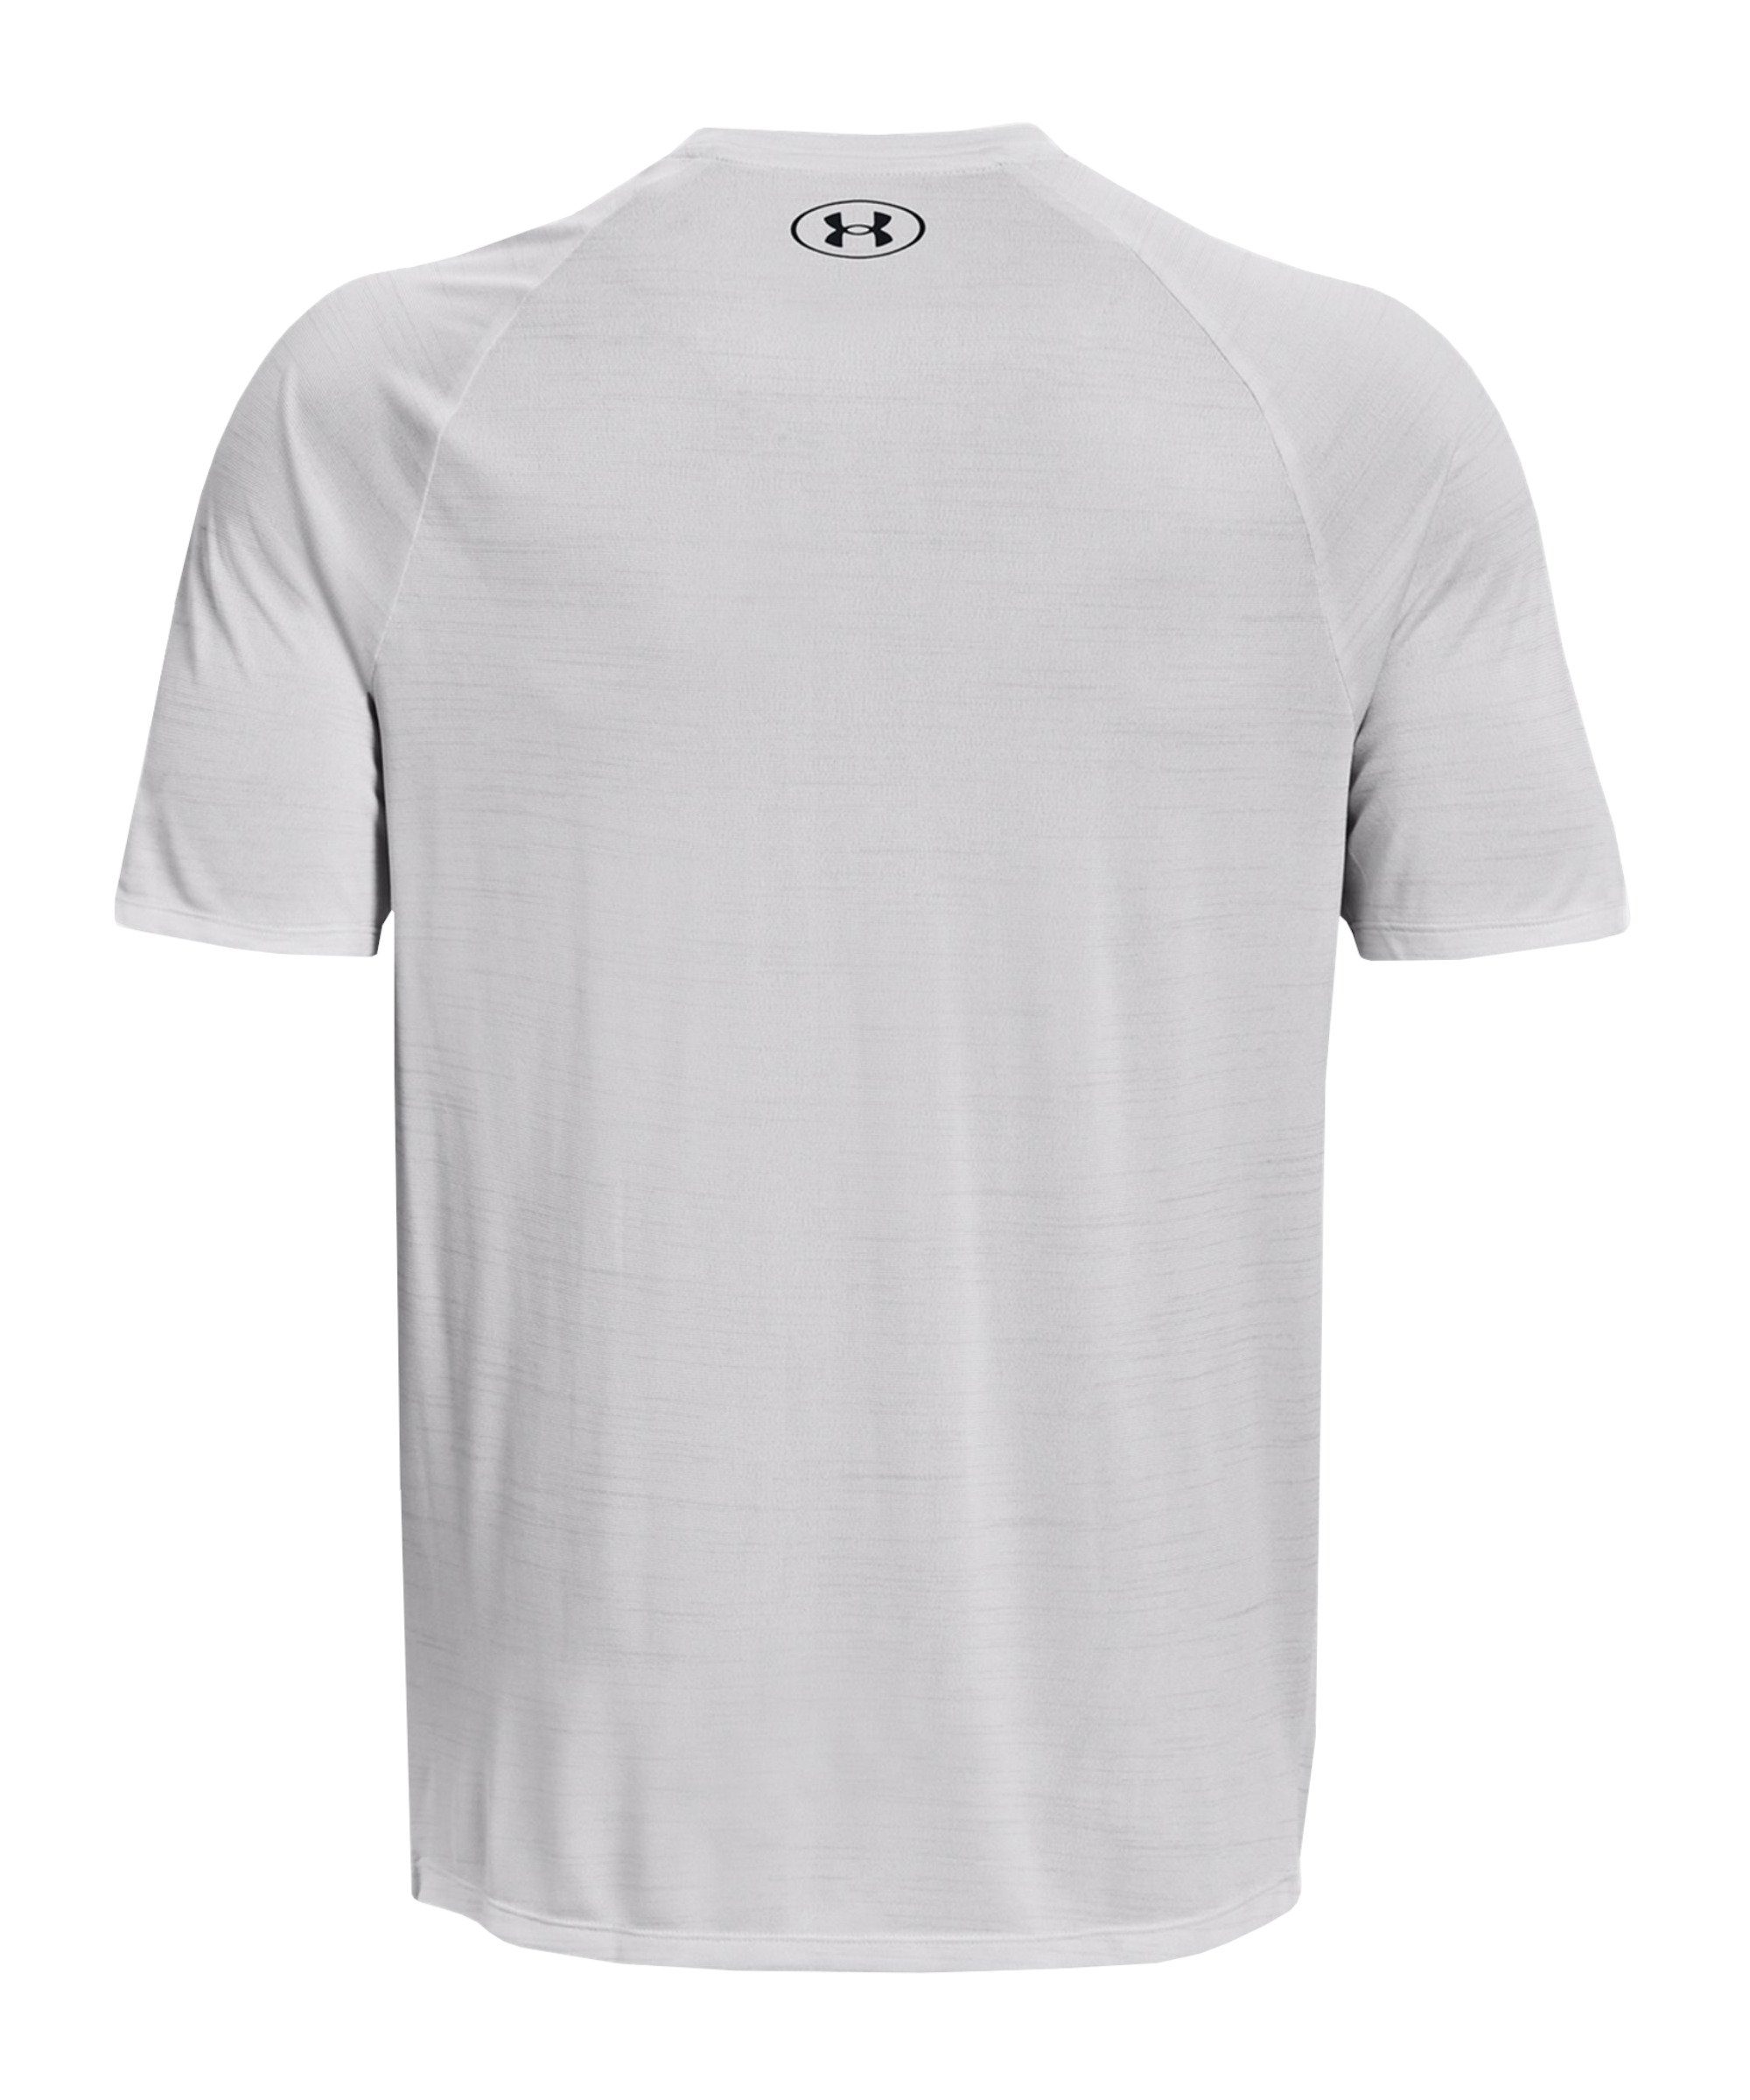 Tiger grau T-Shirt default Under Tech T-Shirt Armour® 2.0